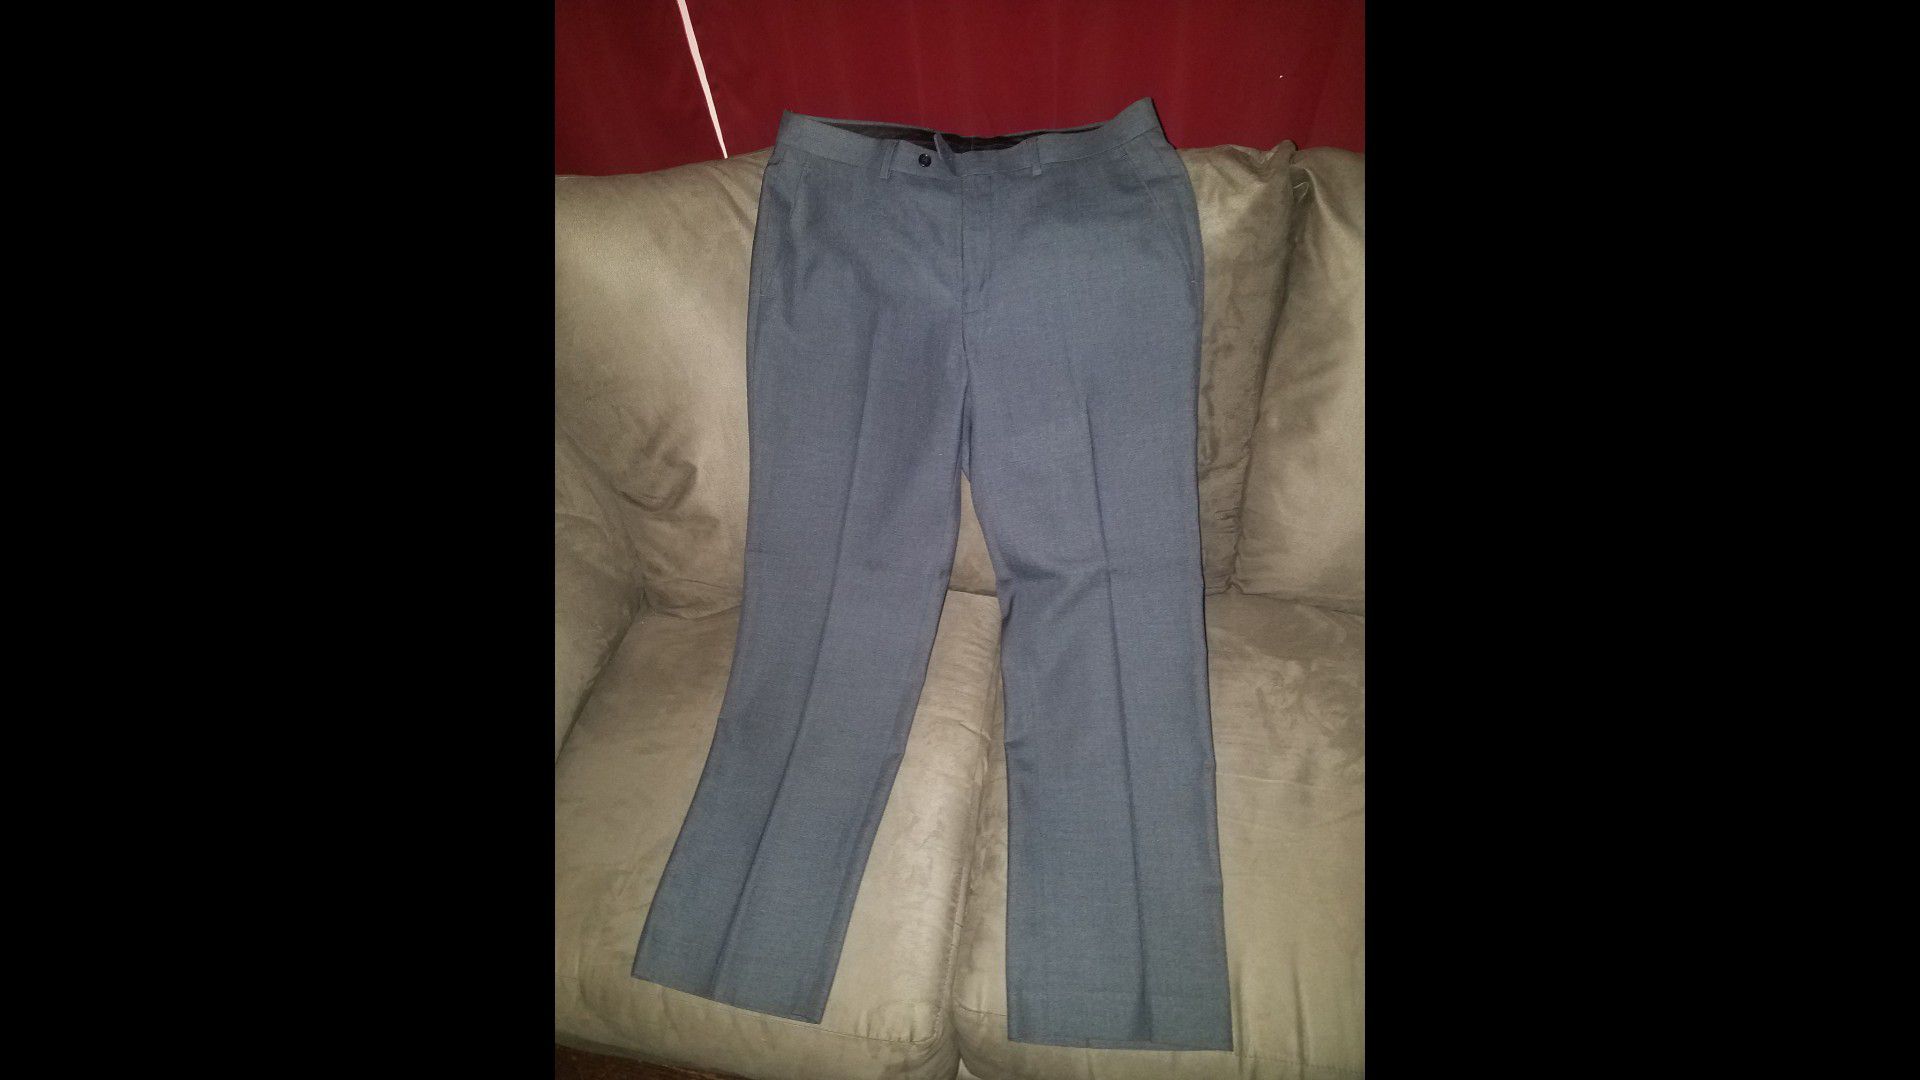 Michael Kors mens dress pants size 34 w x 30